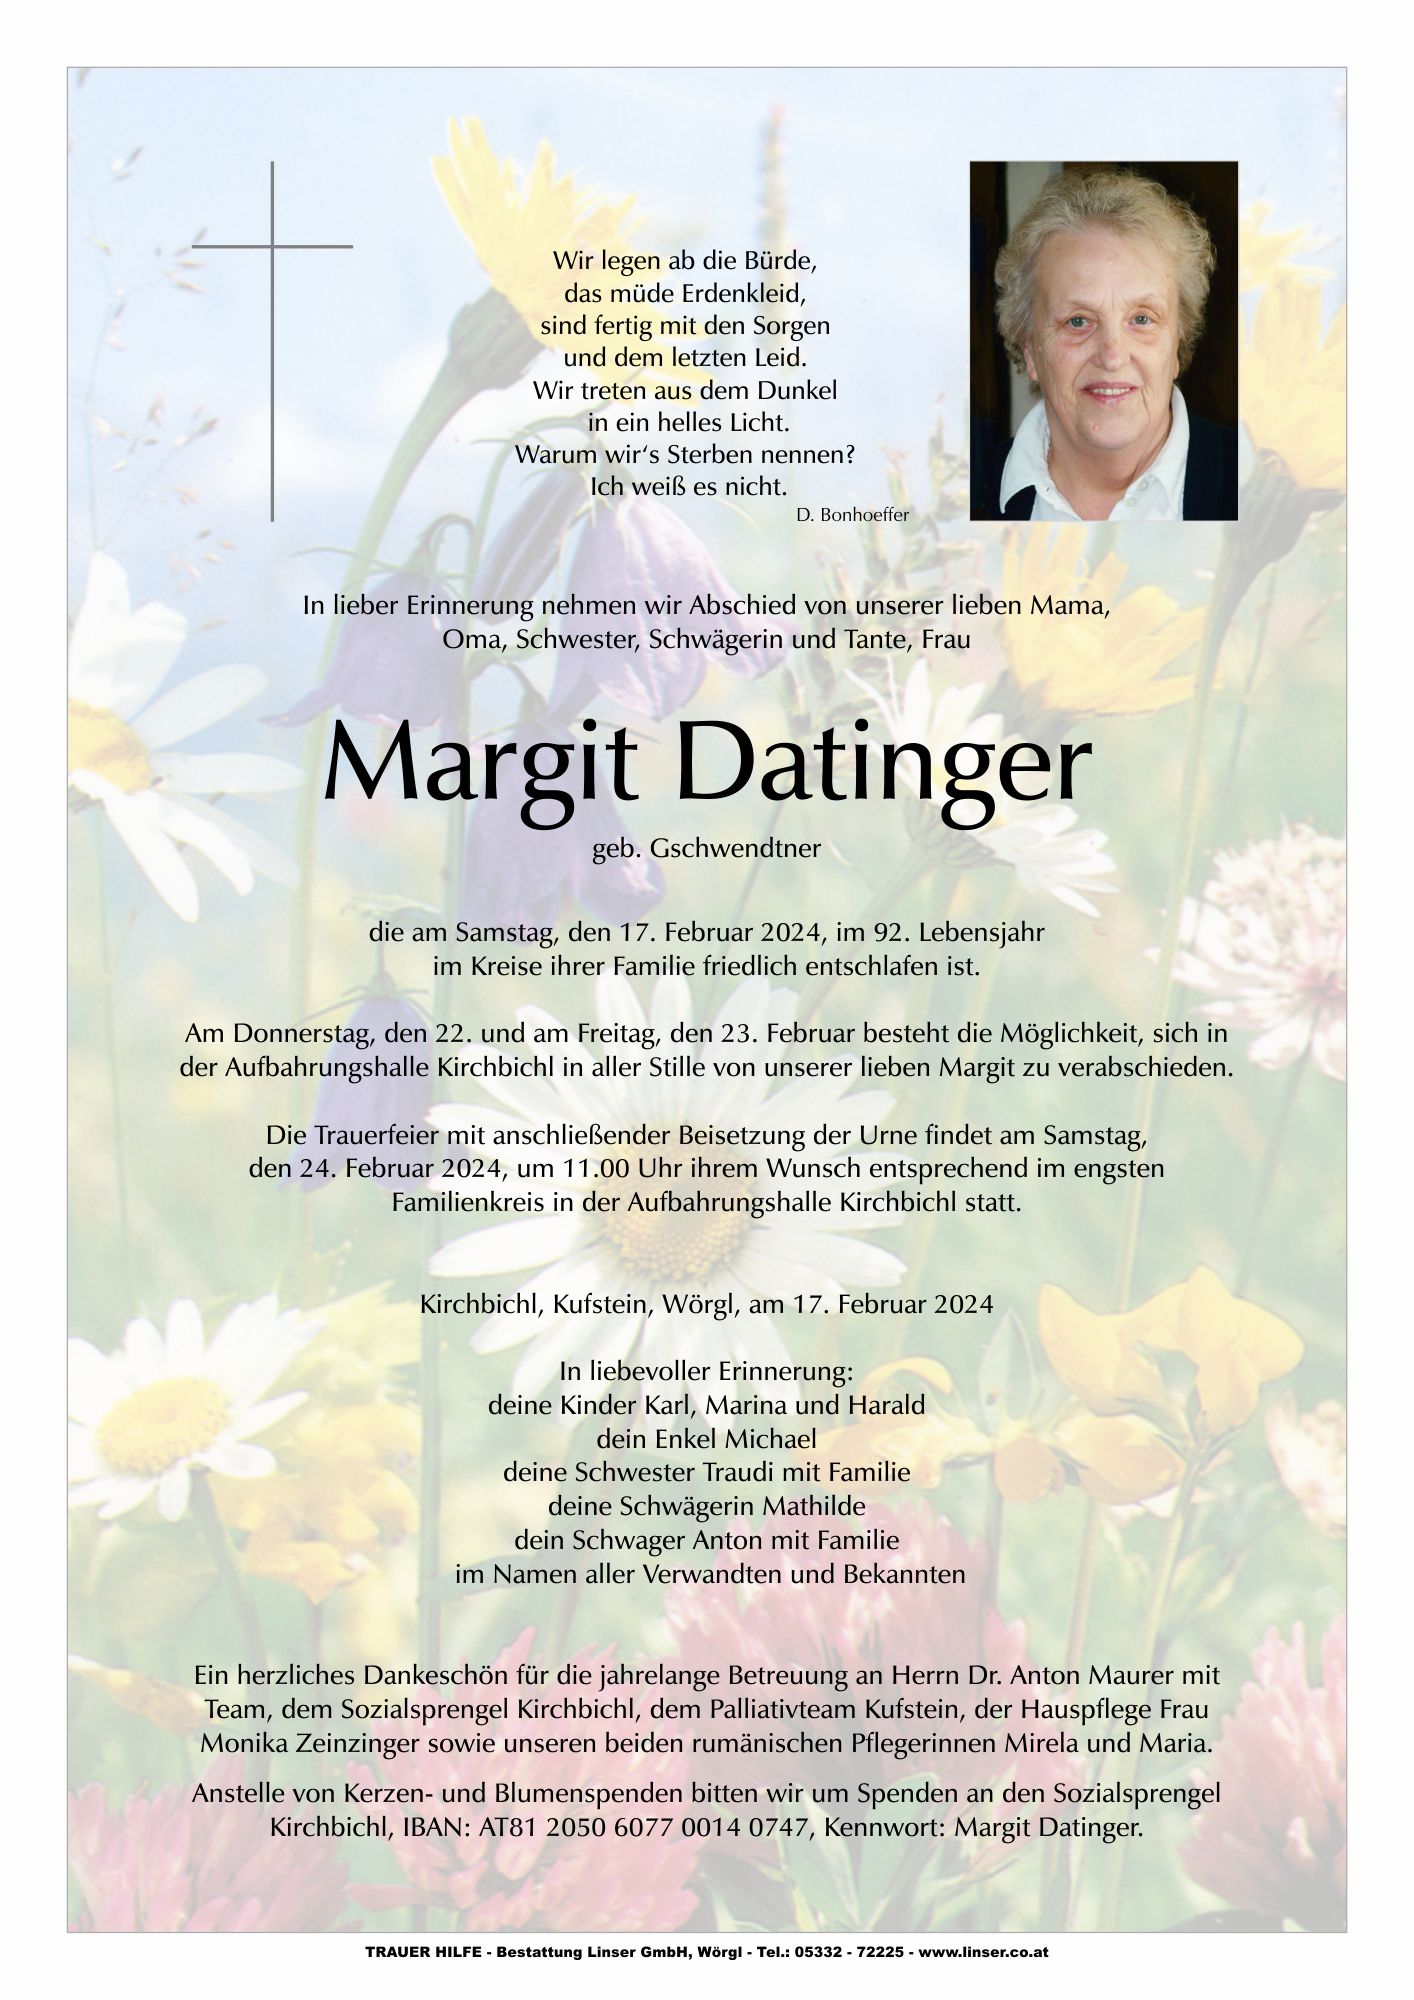 Margit Datinger